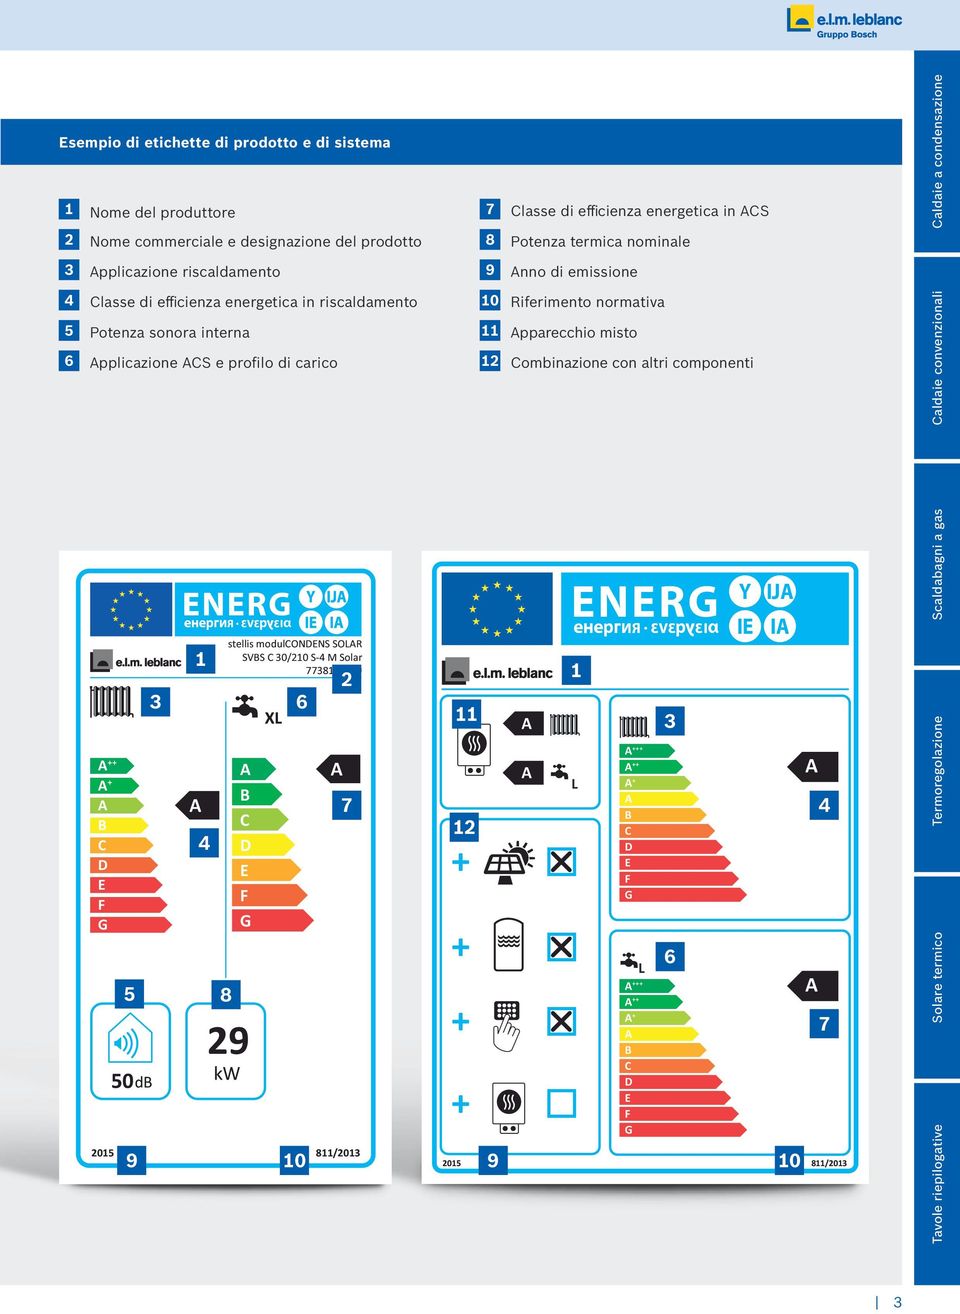 energetica in riscaldamento 5 Potenza sonora interna 6 pplicazione S e profilo di carico Riferimento normativa pparecchio